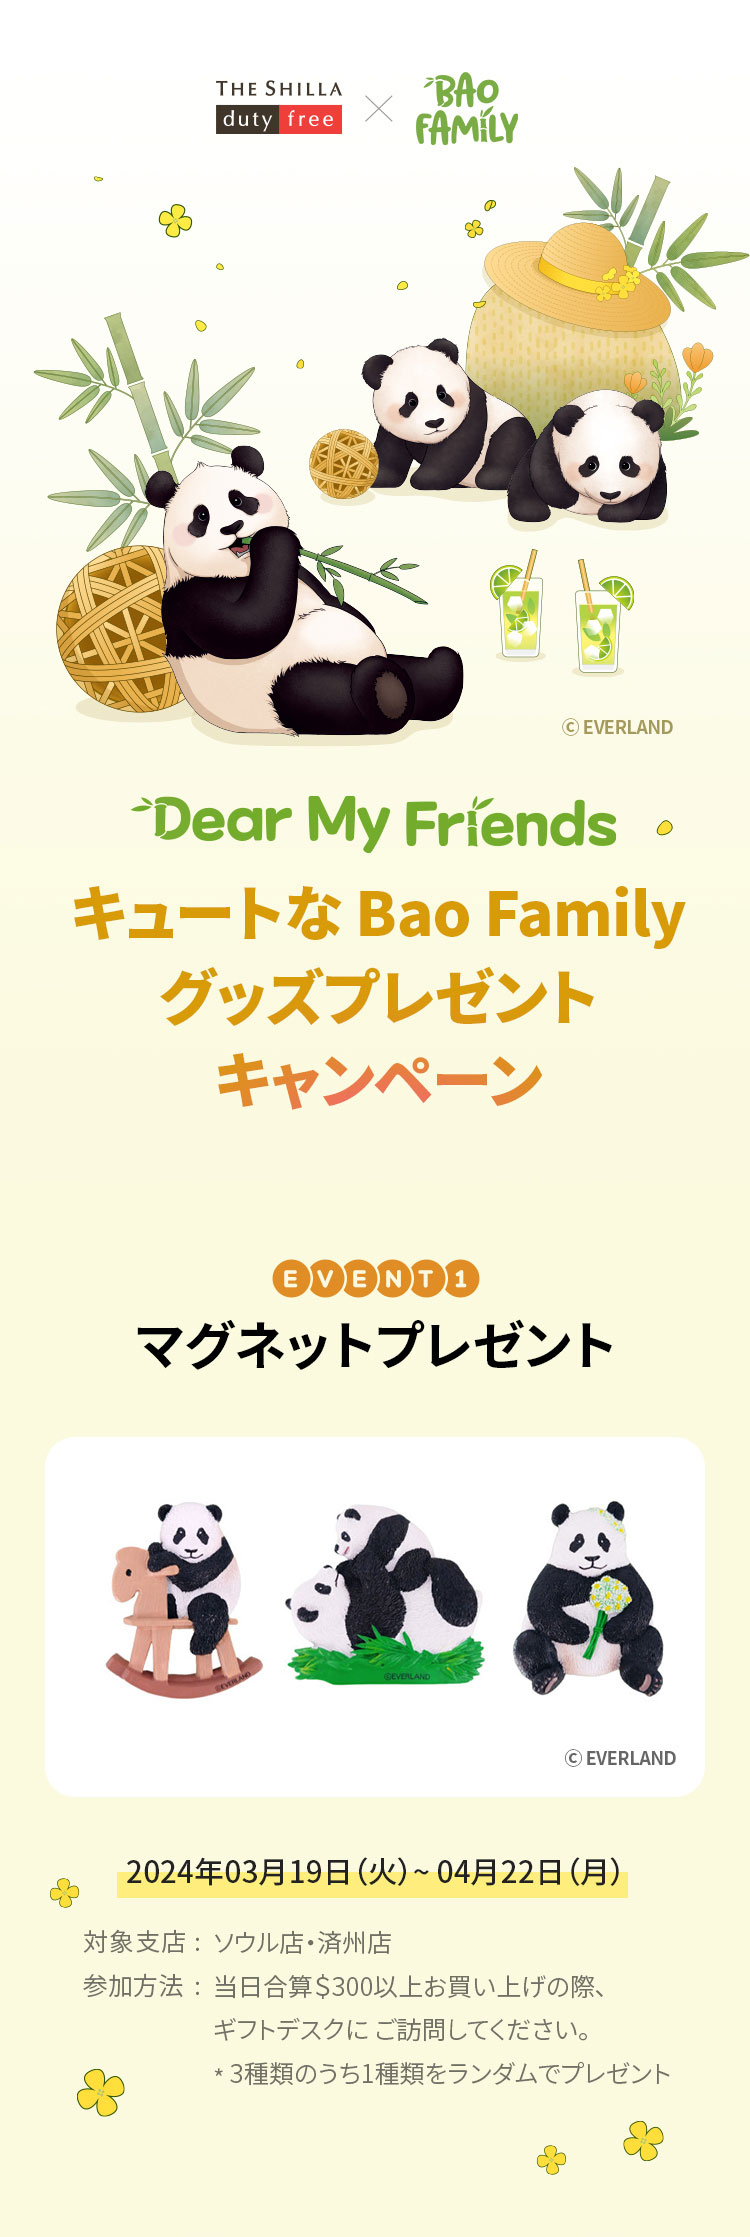 Bao Familyグッズプレゼント贈呈